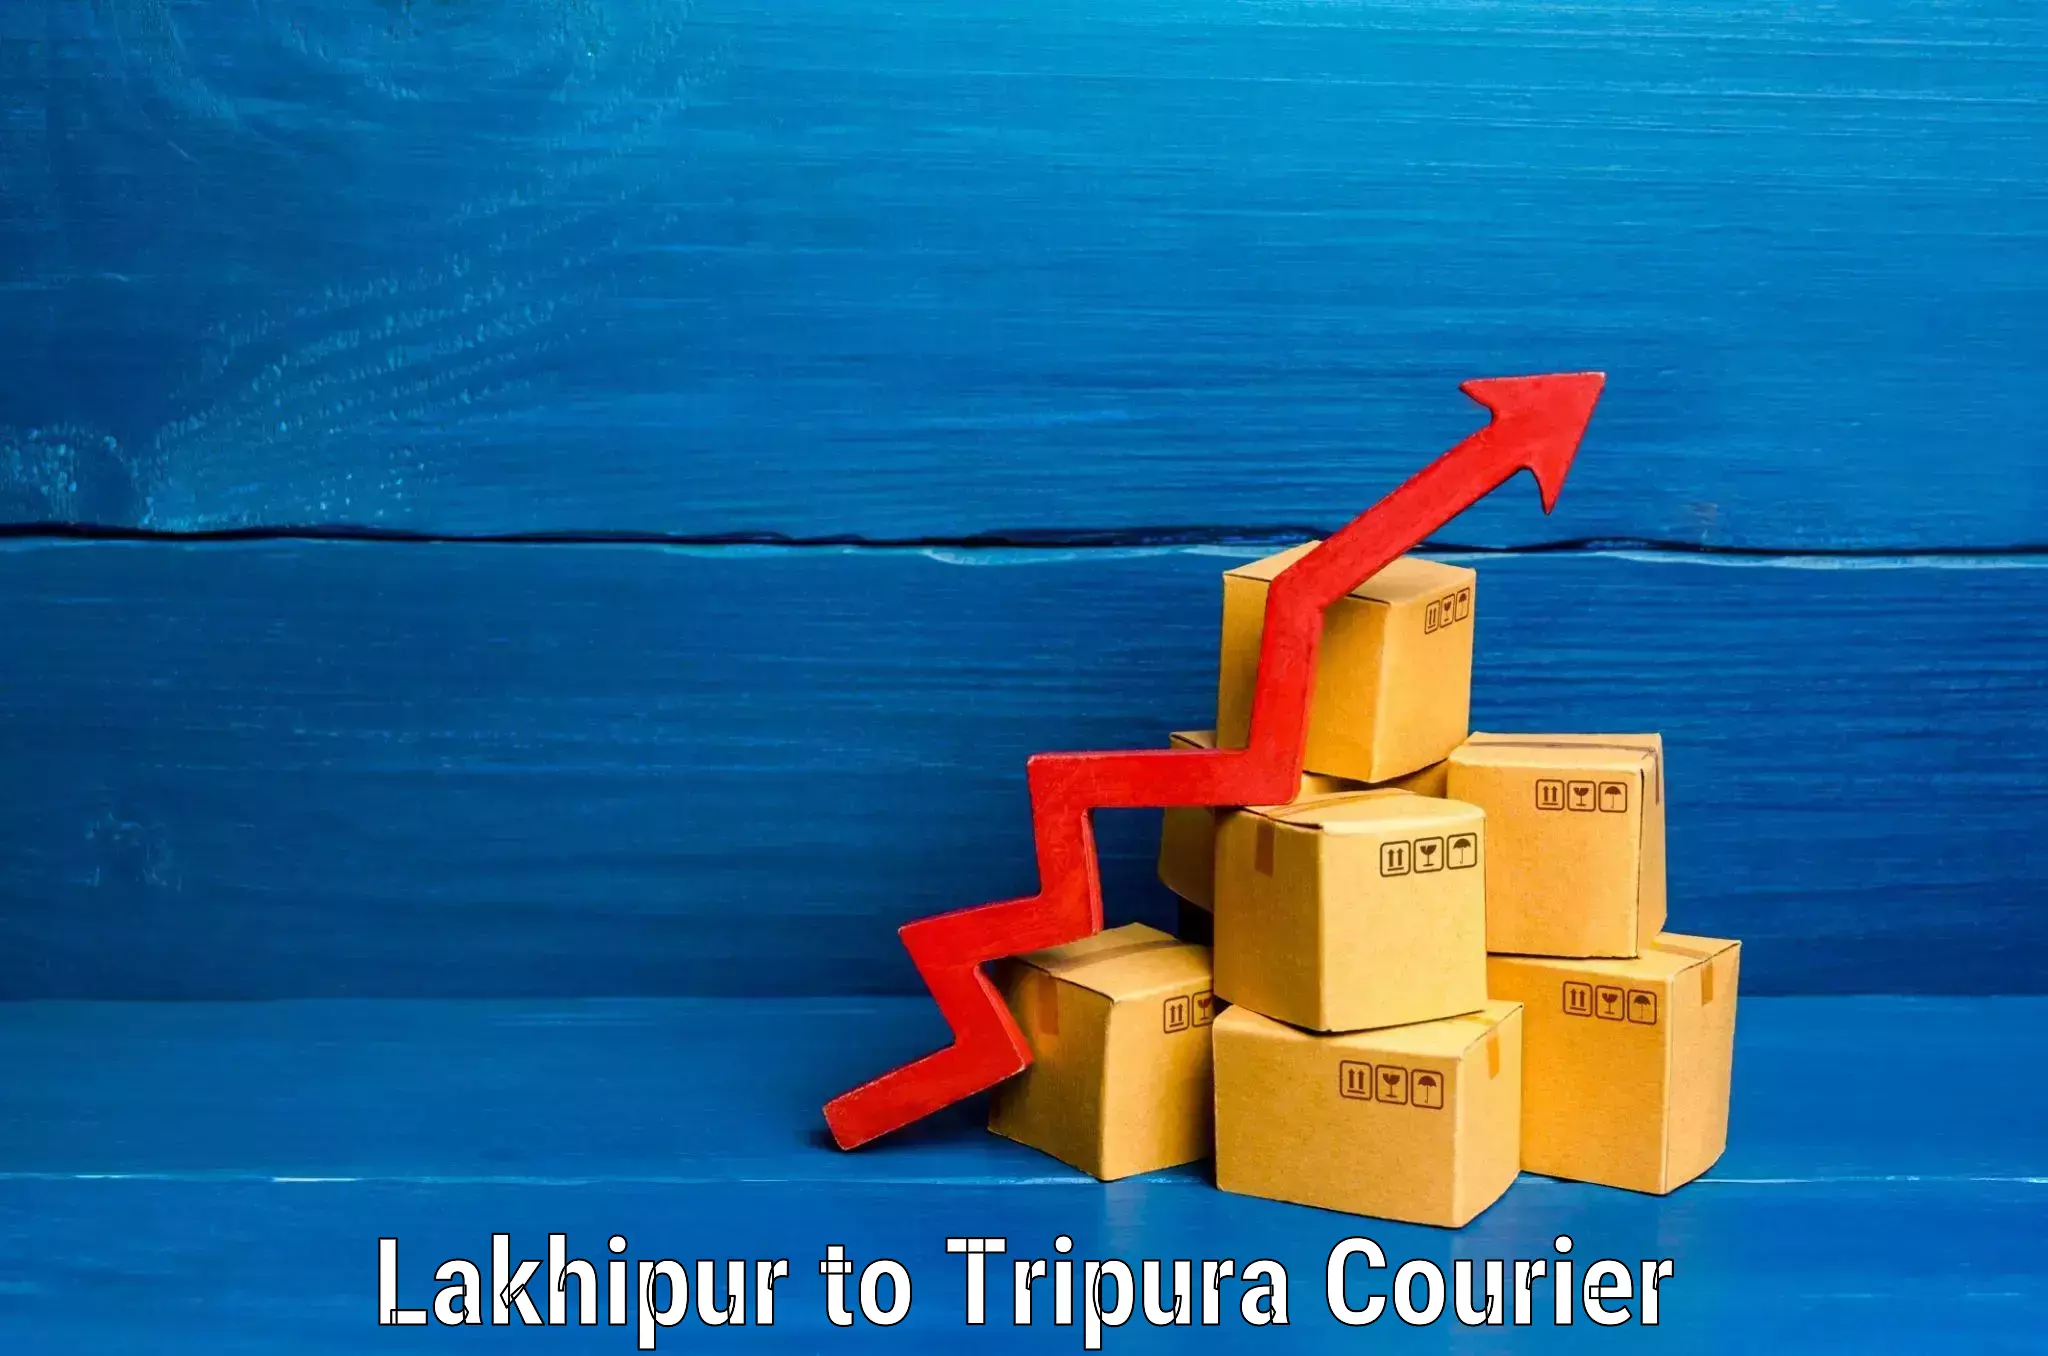 Unaccompanied luggage service Lakhipur to Tripura